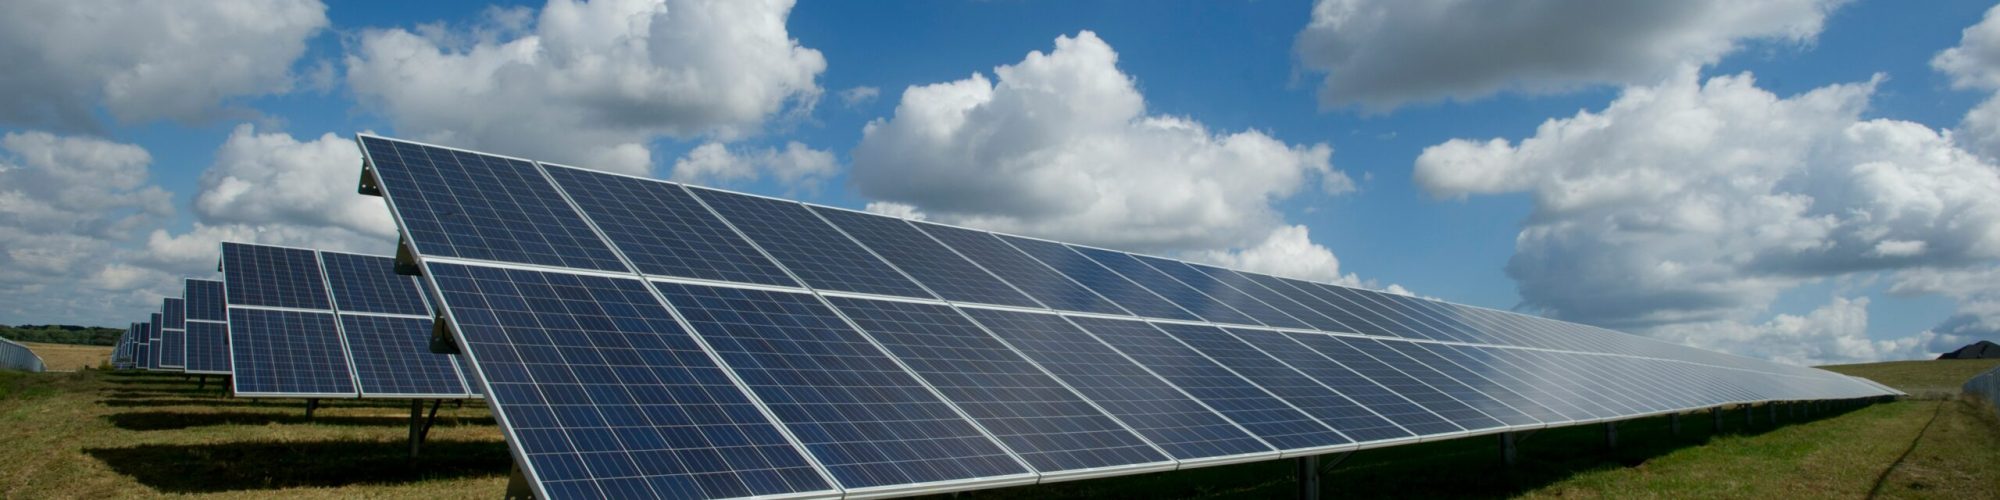 Päikesepaneelid - strateegiline investeering jätkusuutlikusse tulevikku